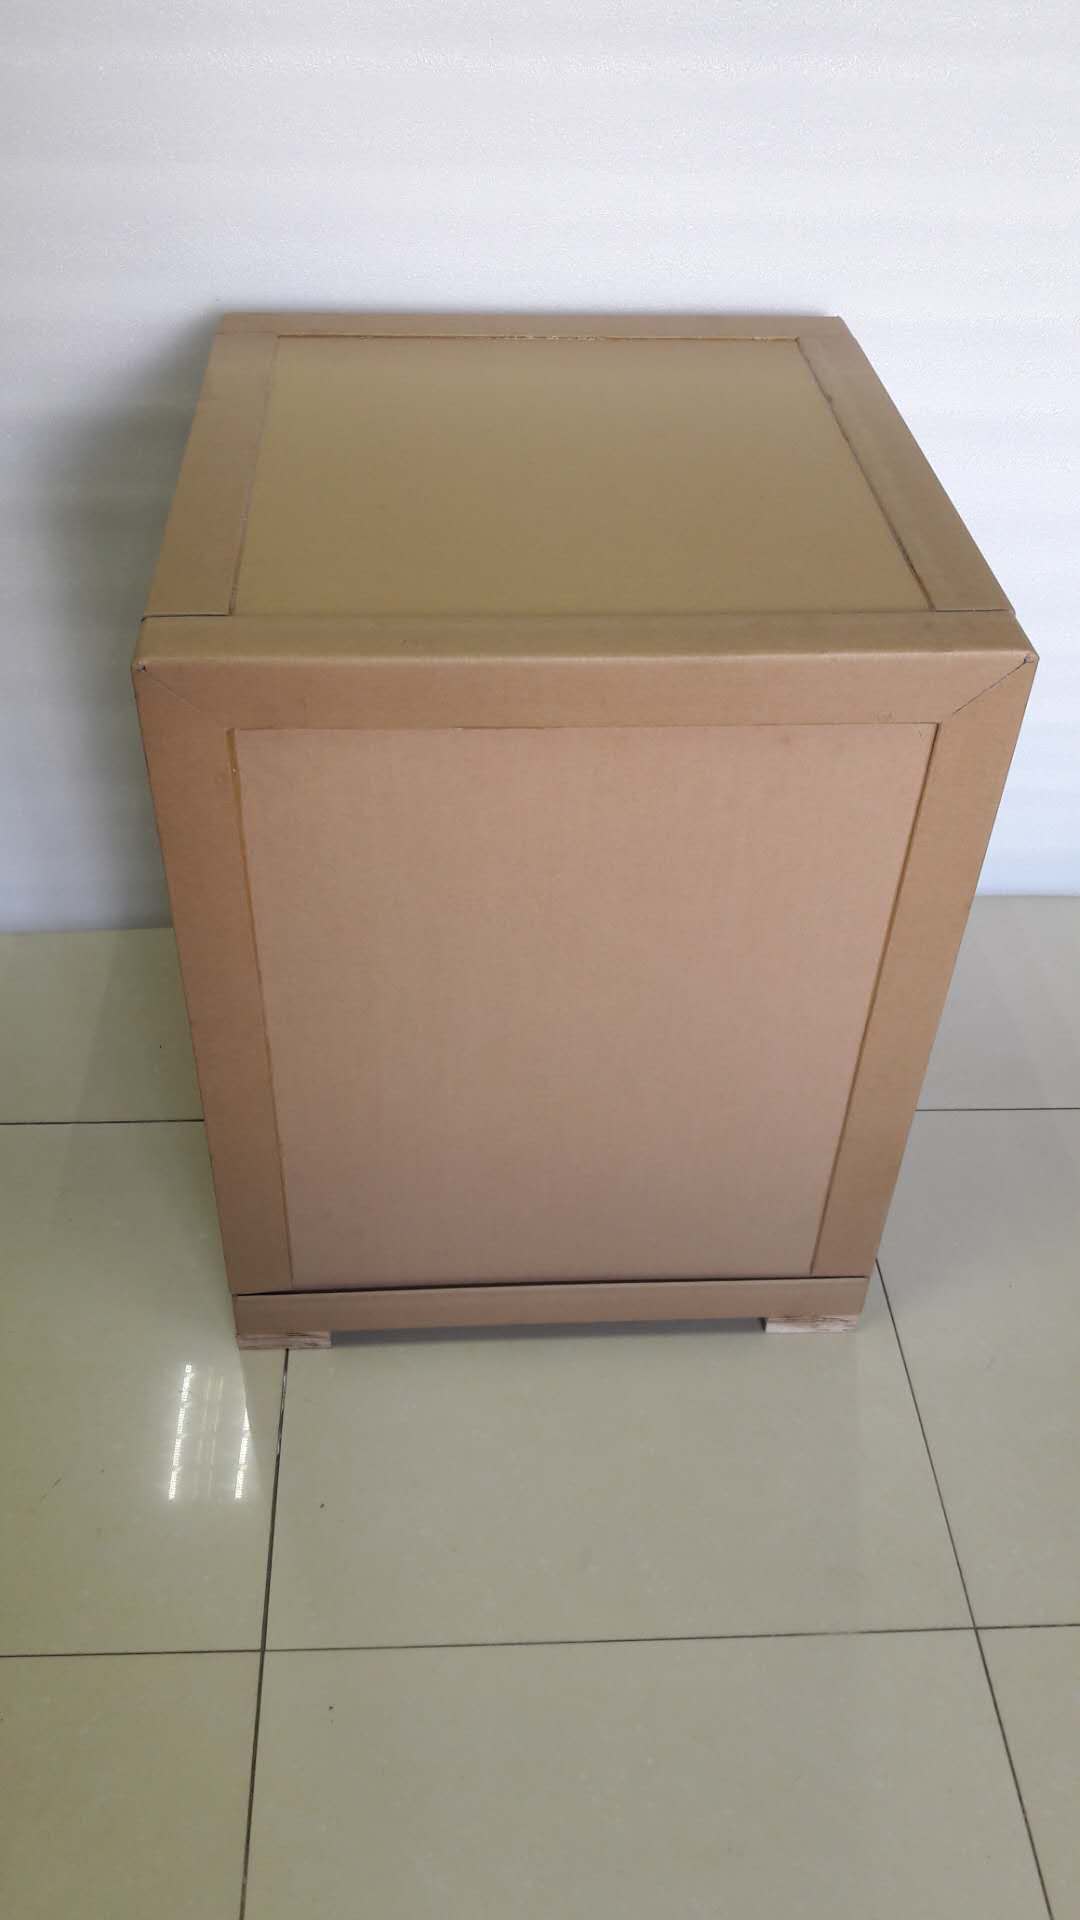 广州市蜂窝纸箱价格厂家蜂窝纸箱价格 优质供应商 厂家直销 广州蜂窝纸箱生产商 批发